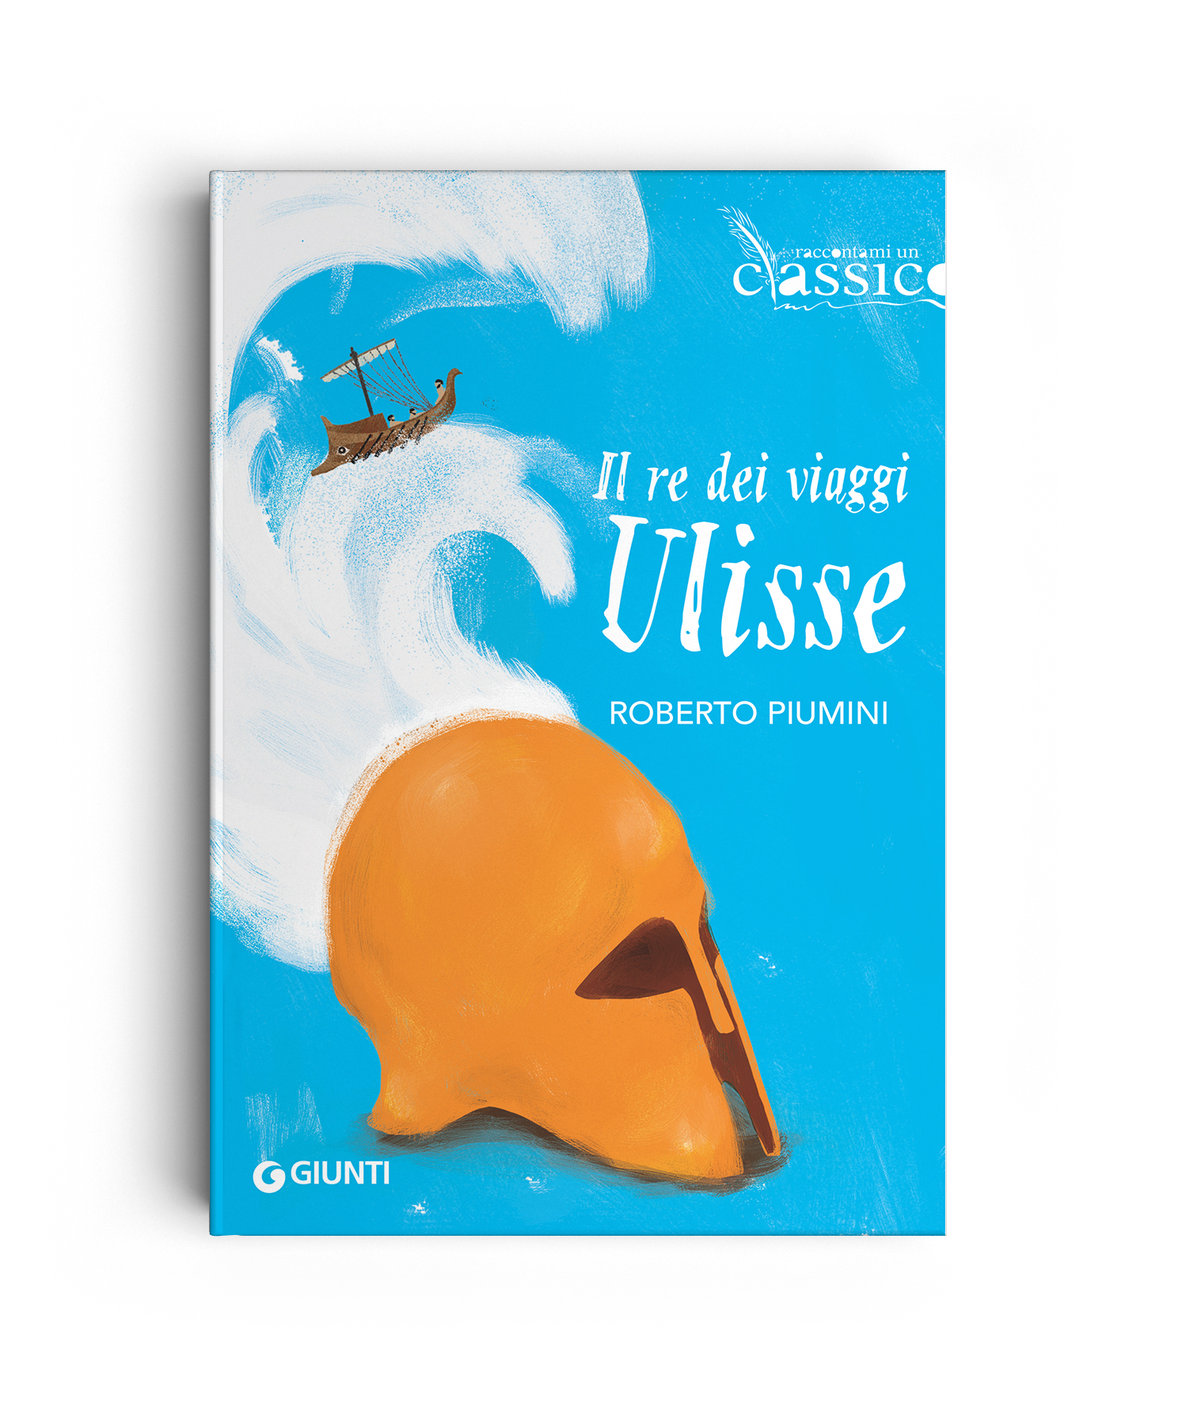 Ulysse - book cover Giunti editore